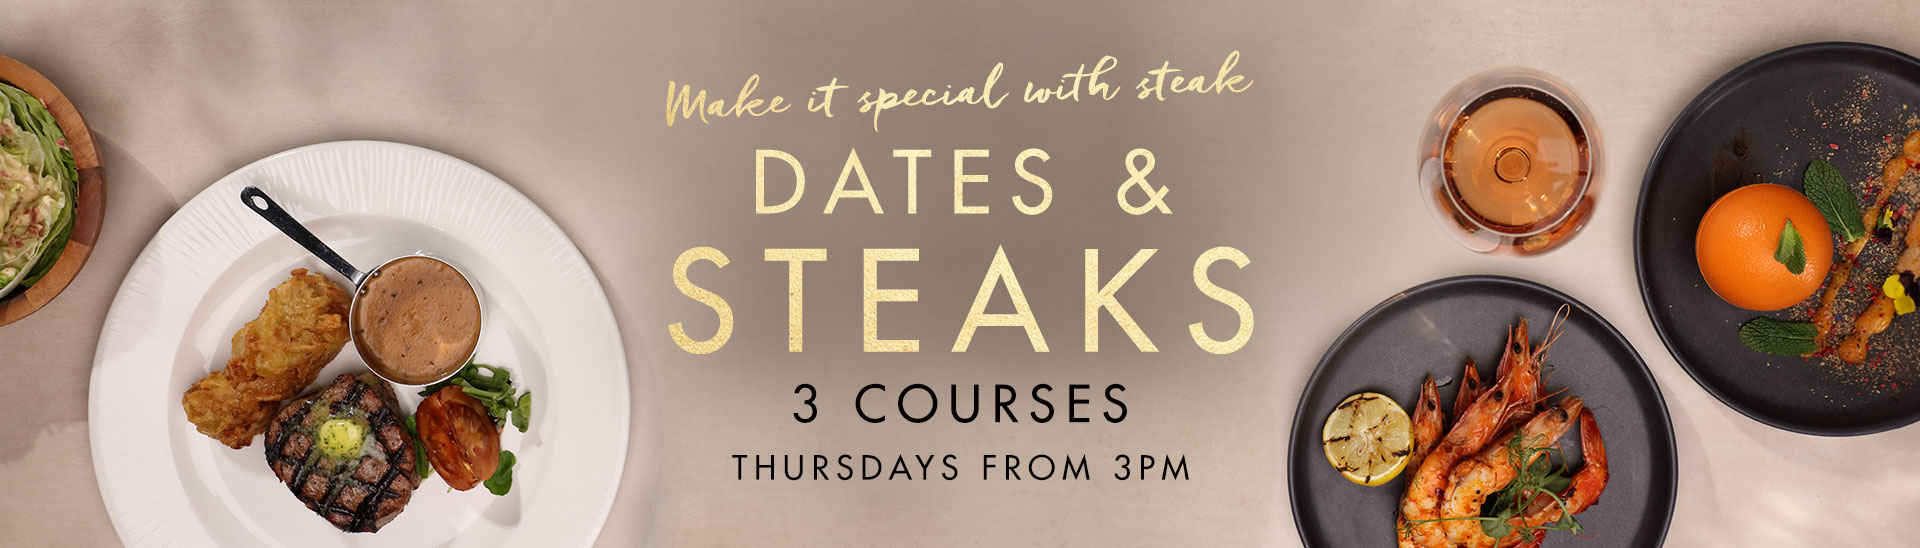 Dates & Steaks at Miller & Carter Taunton